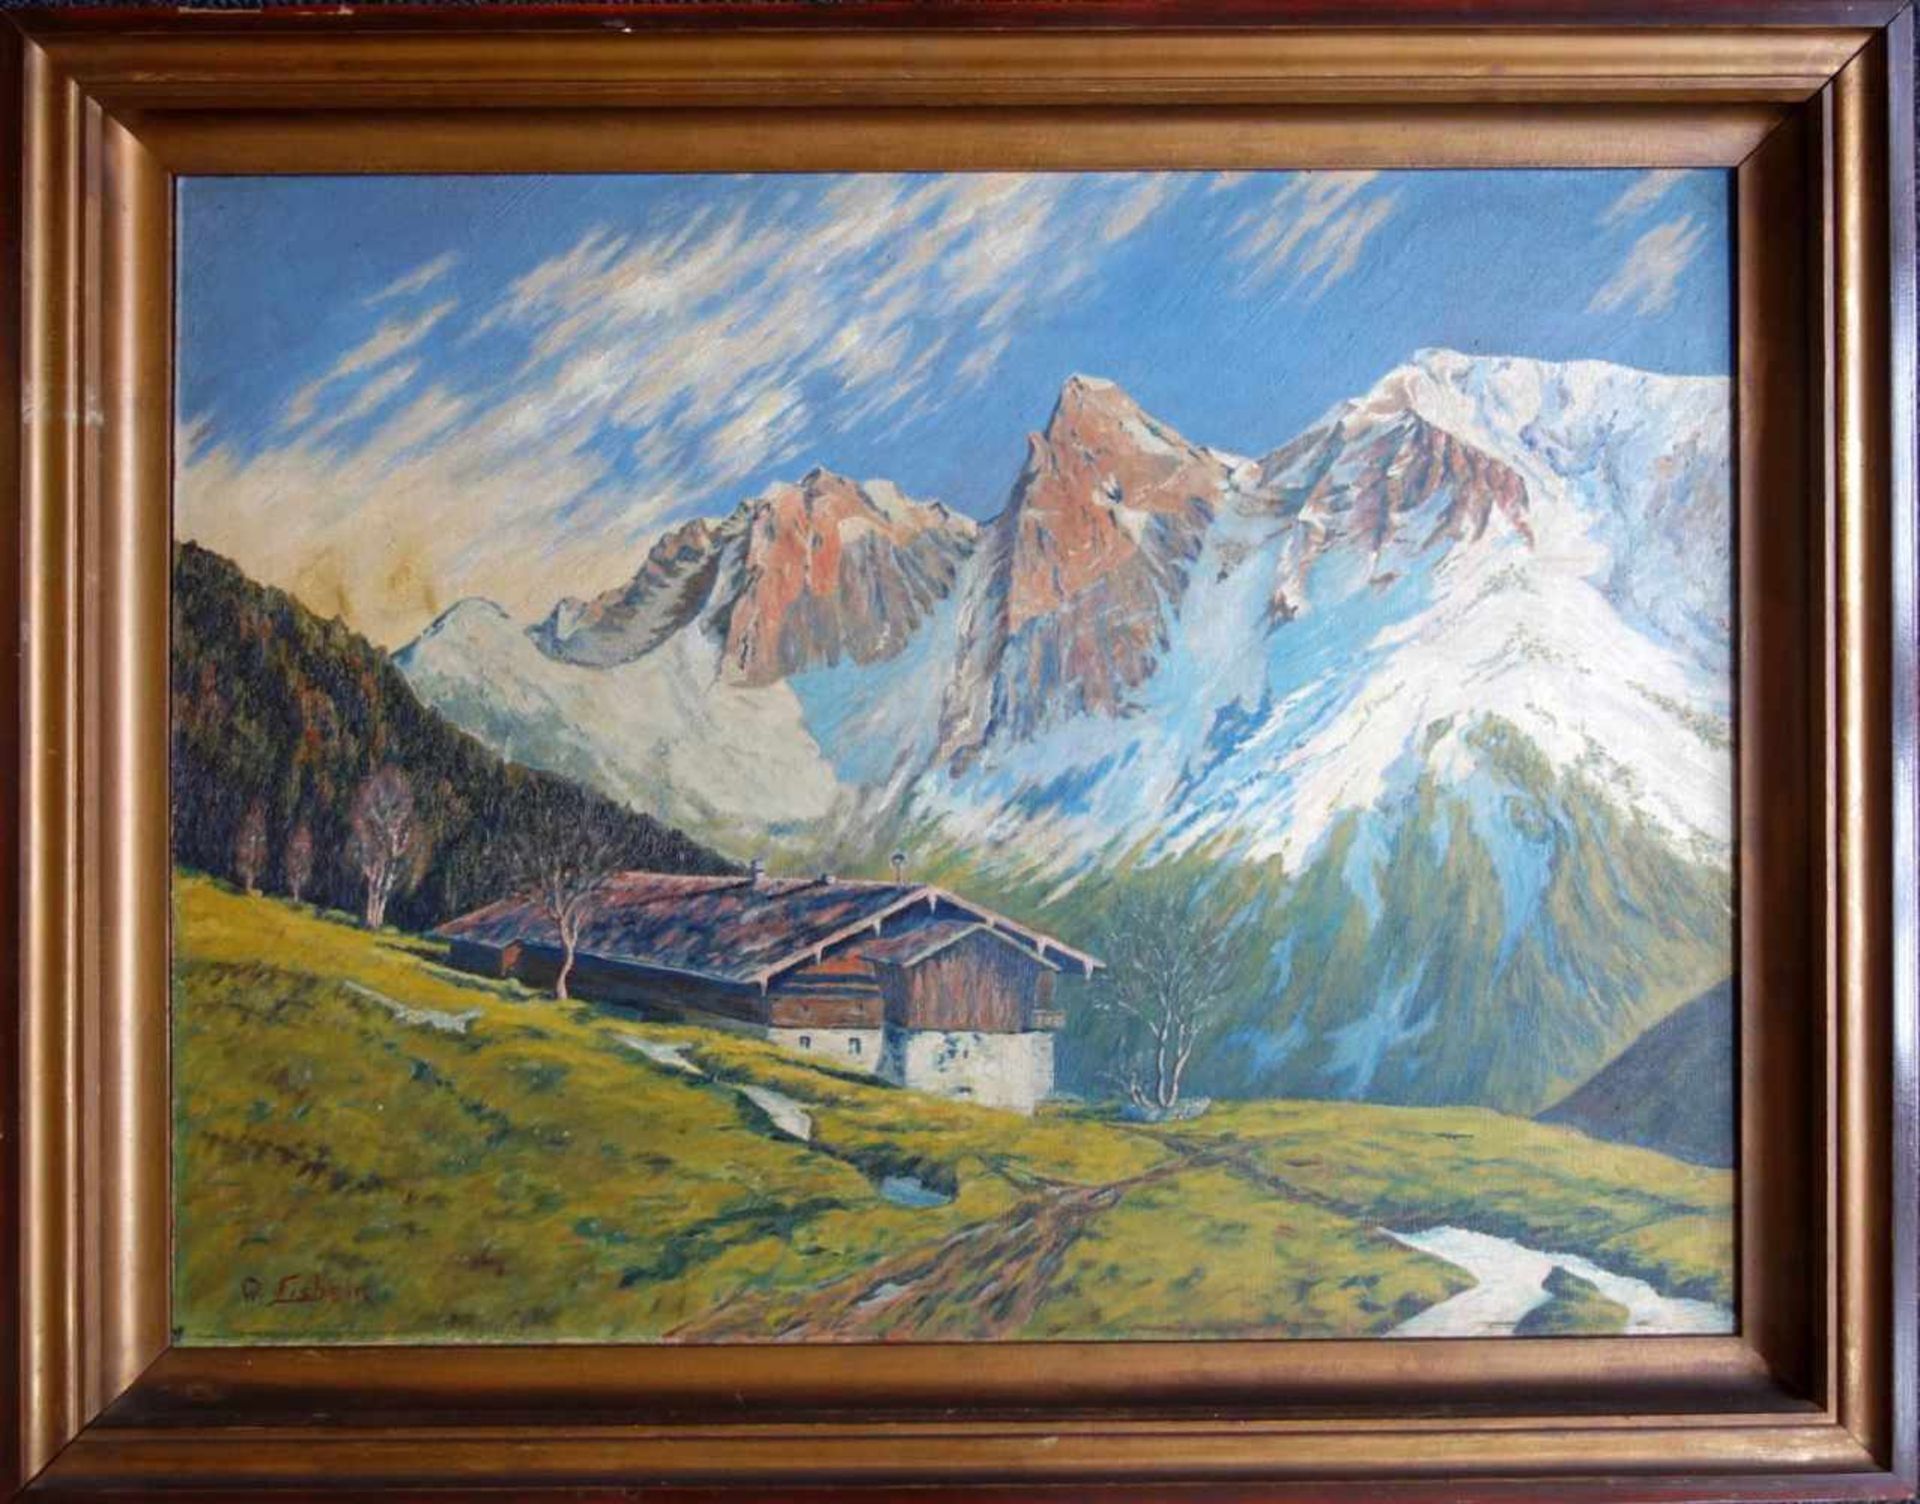 Eisbein, W., "Berghütte in Gebirgslandschaft", 30/40er Jahre Öl/Hartfaser, signiert, 60*80cm,